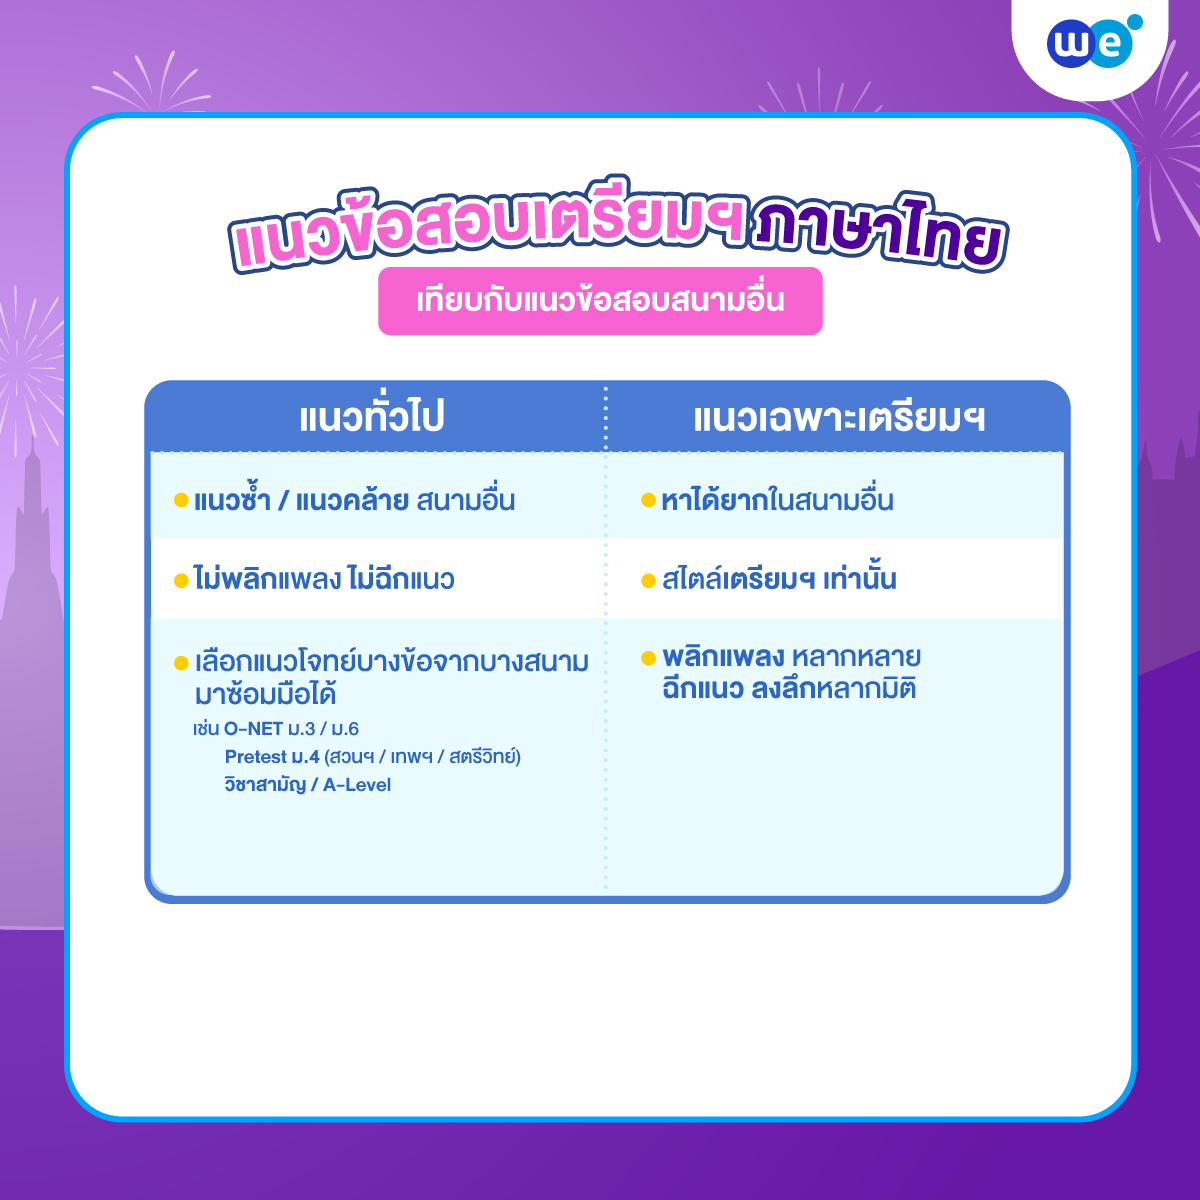 แนวข้อสอบภาษาไทยสอบเข้า ม.4 เตรียมอุดมฯ เทียบกับแนวข้อสอบสนามอื่น